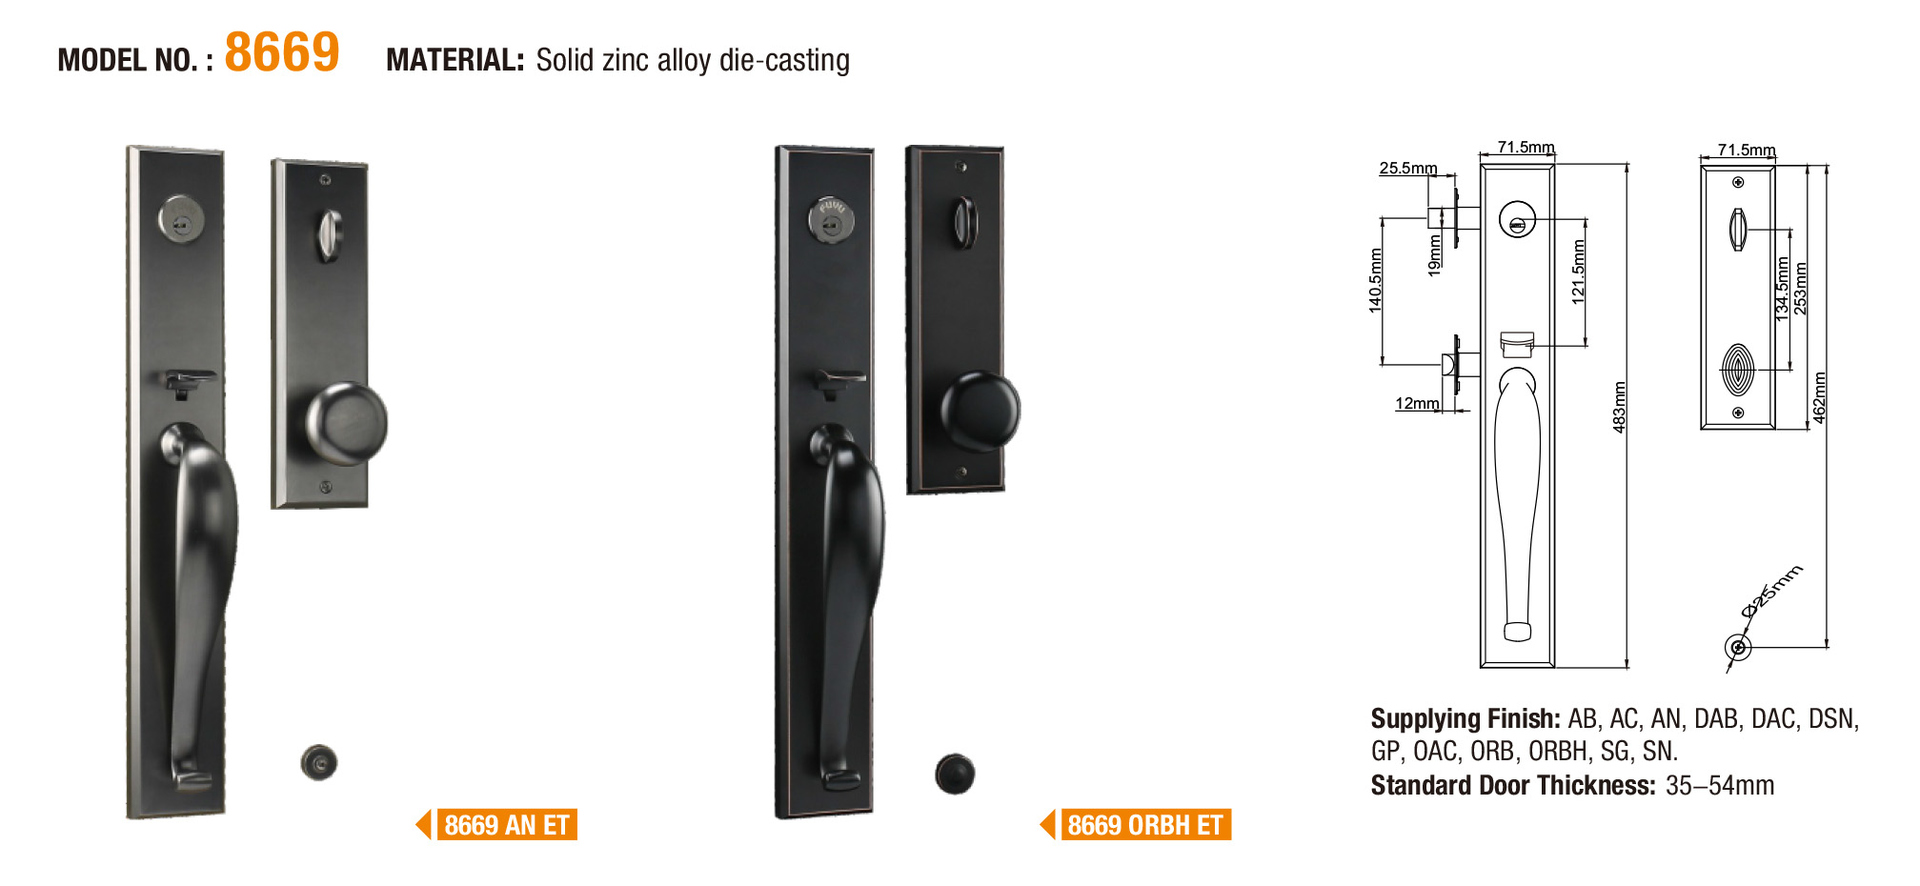 FUYU door zinc alloy door lock for wooden door with latch for entry door